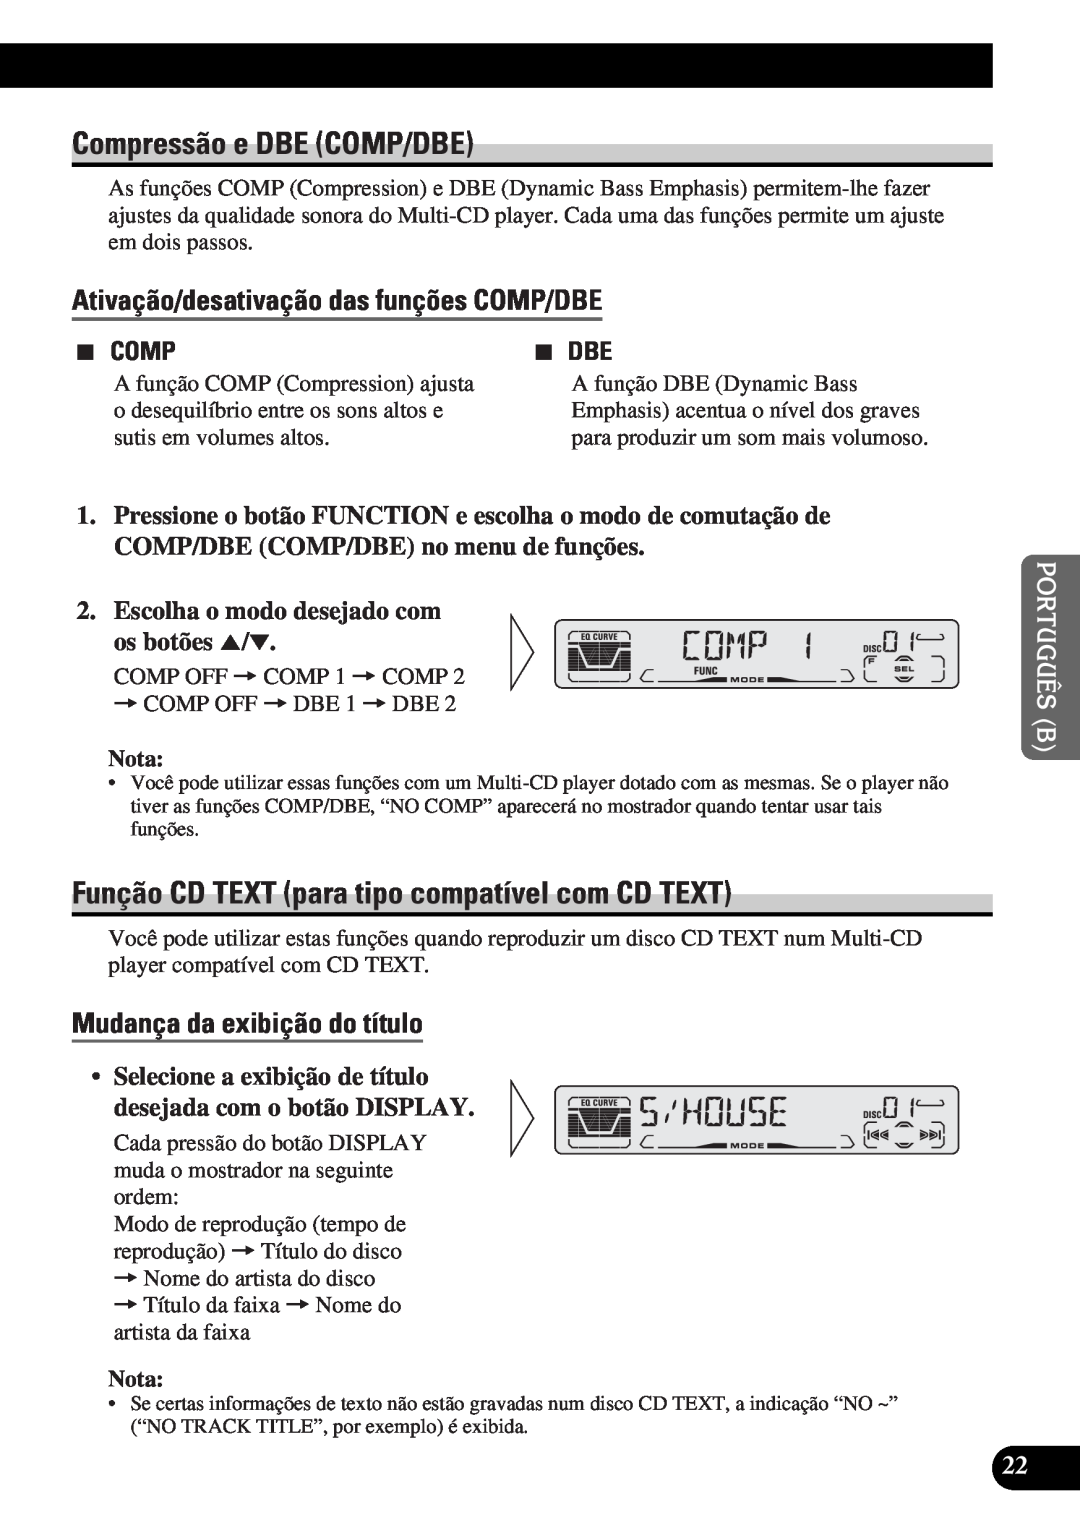 Pioneer DEH-P3150-B Compressão e DBE COMP/DBE, Função CD TEXT para tipo compatível com CD TEXT, 2299, 7 DBE, Nota 